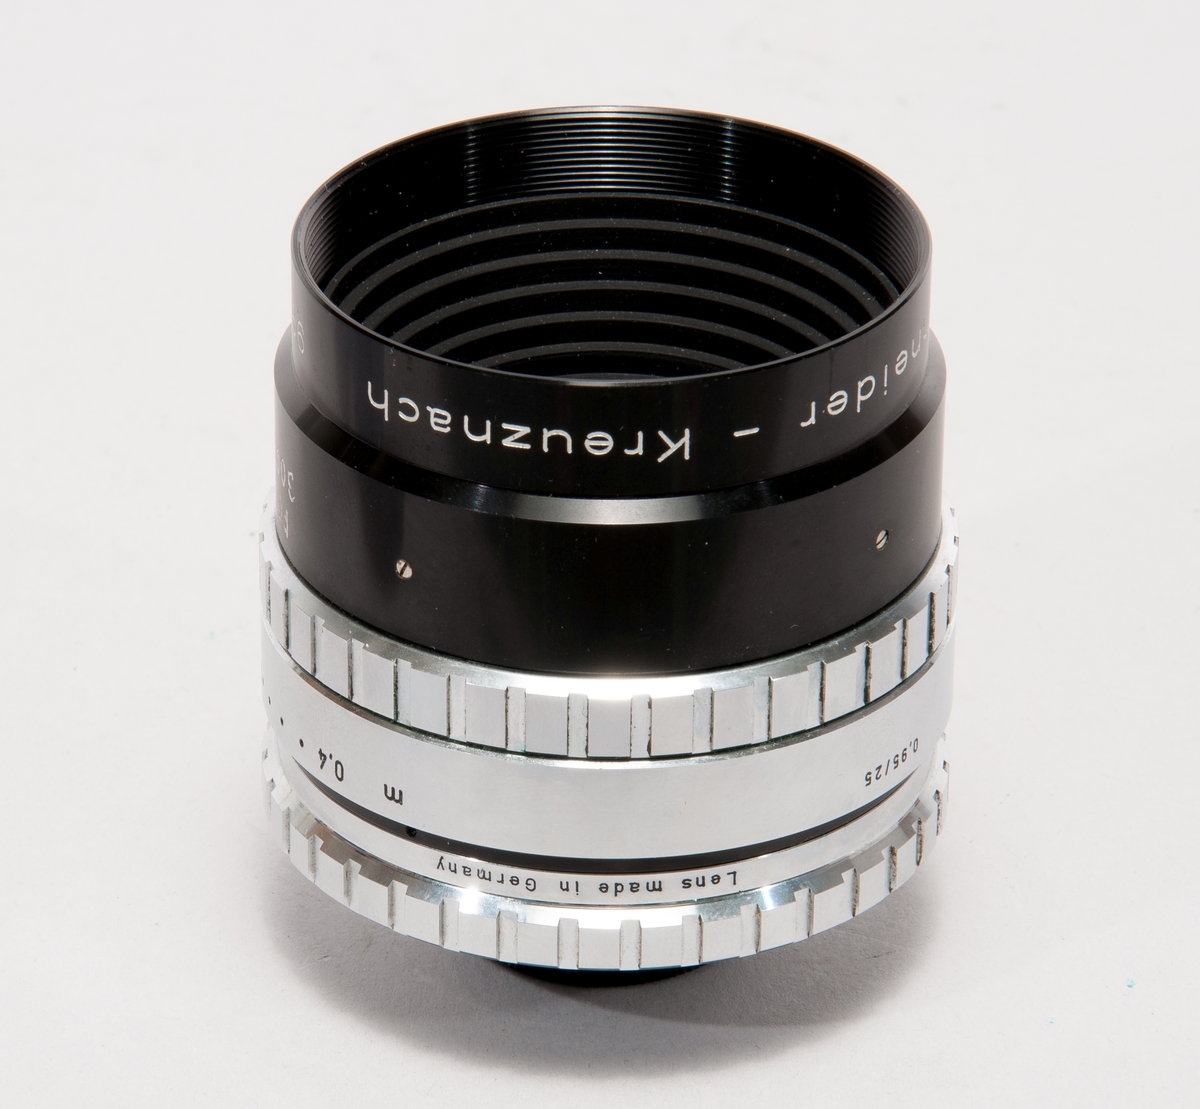 Objektiv  i aluminium och glas, med linsskydd. Avsedd för 16 mm filmkamera, Xenon 1:0,95/25 nr 99306000. I pappask. 
Märkt KTH 300654